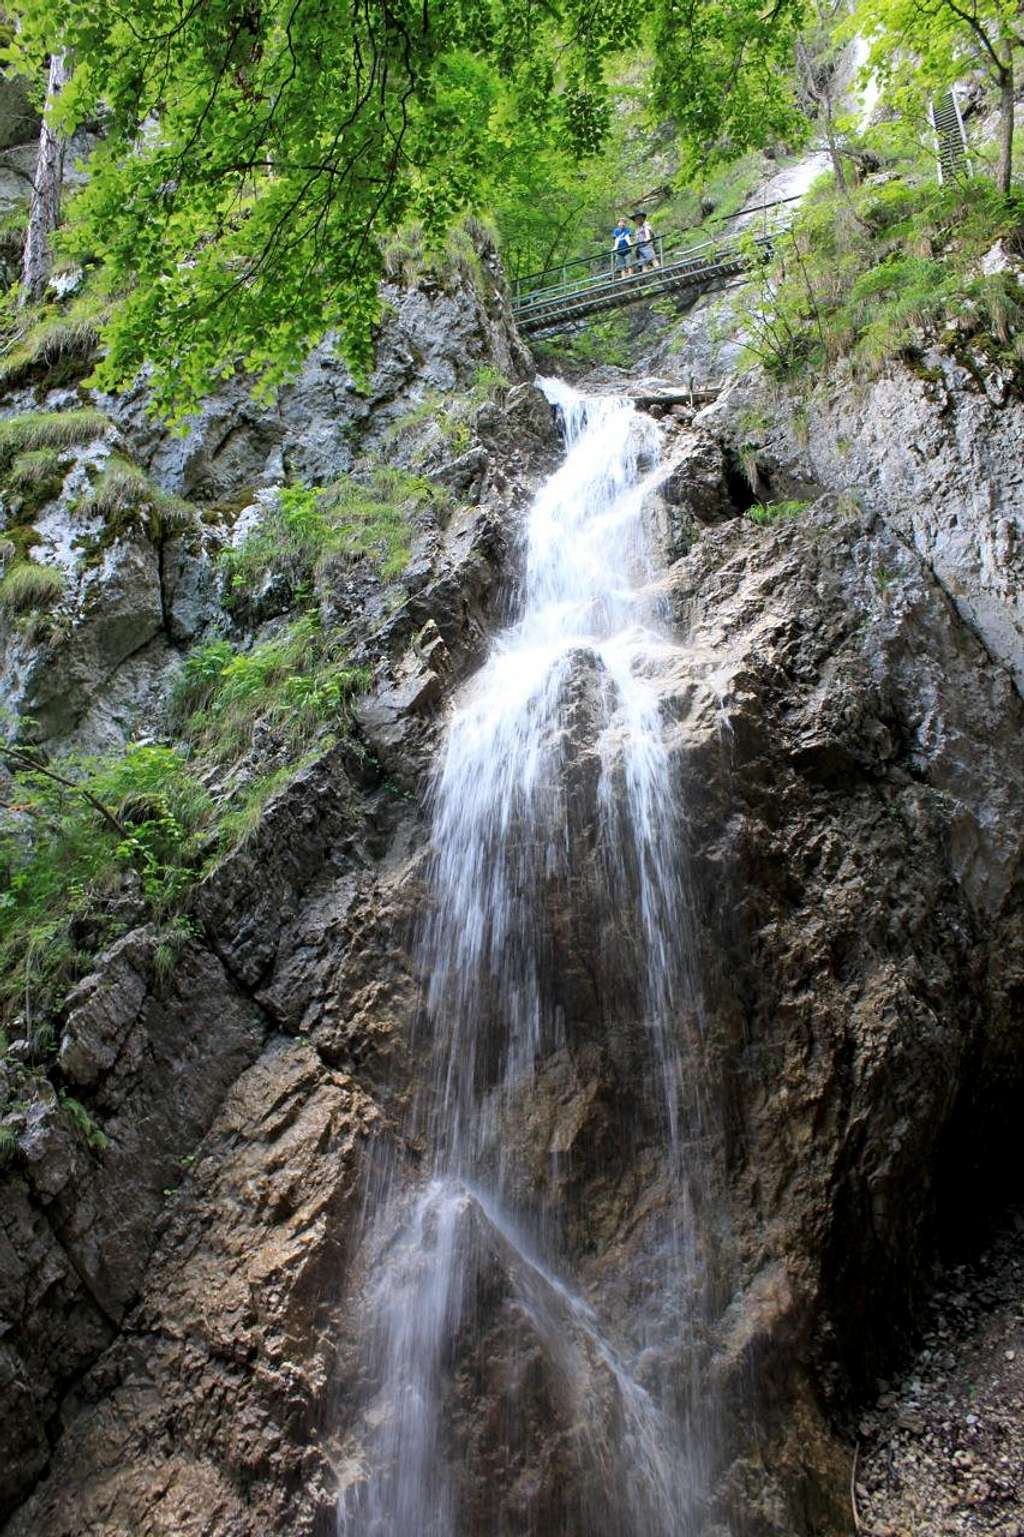 Bridge between waterfalls